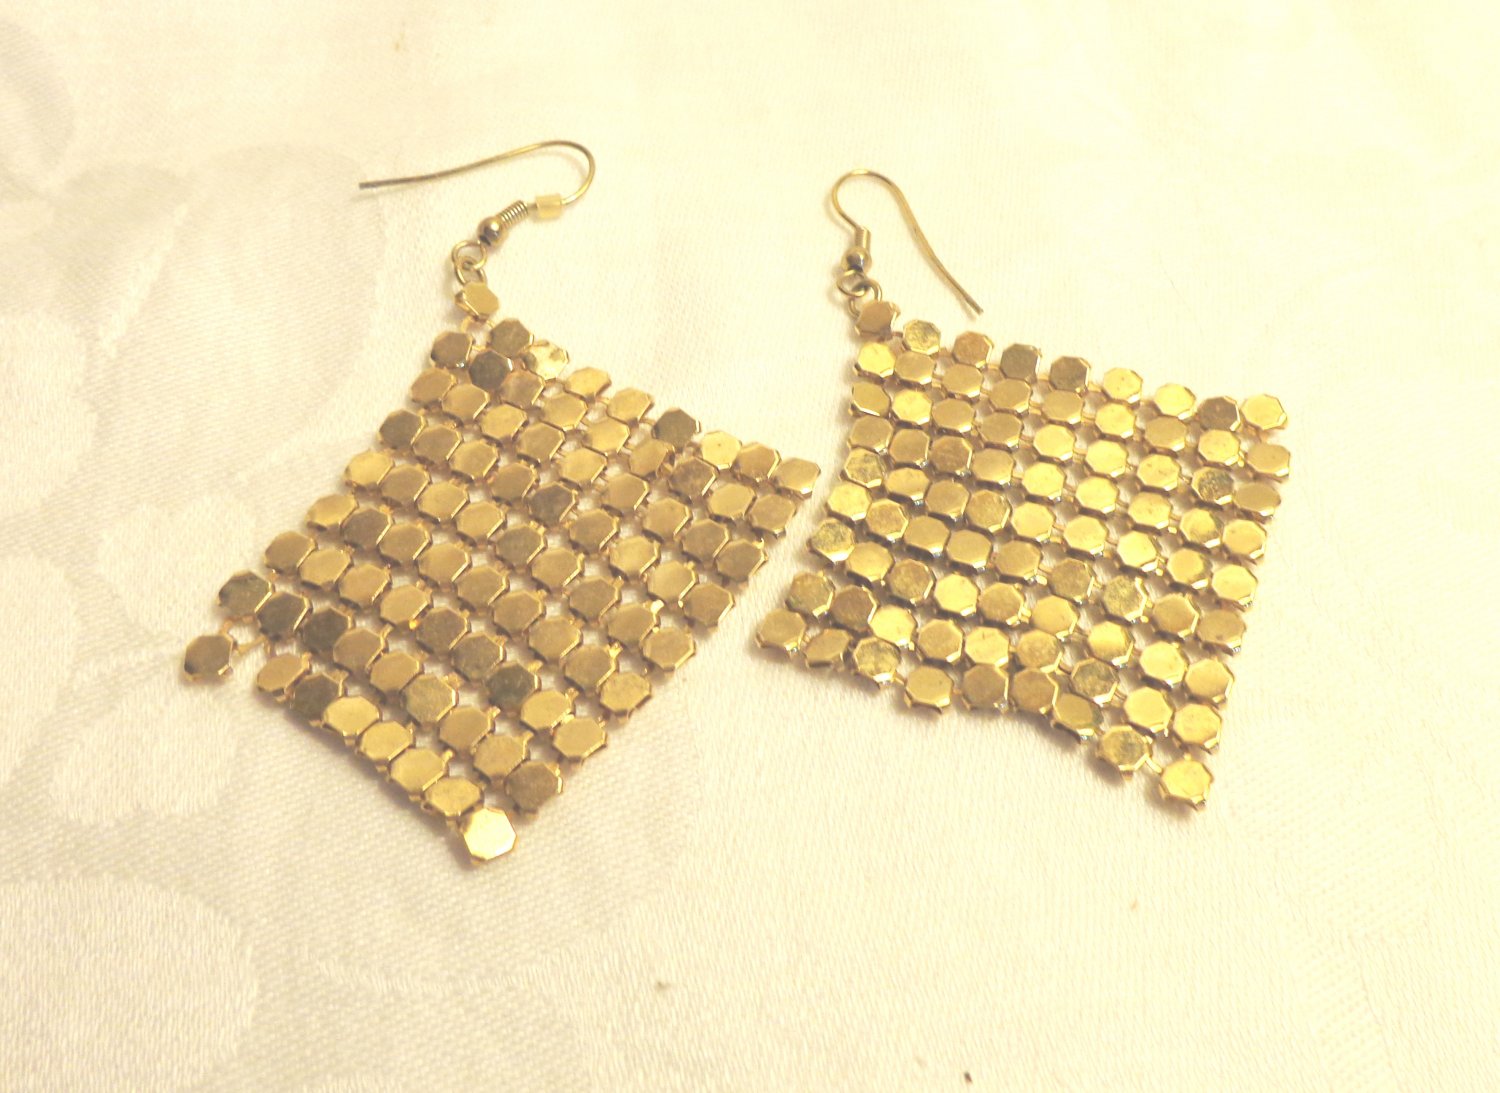 Gold tone alu-mesh chandelier earrings pierced shepherd's hook draping  ll3492